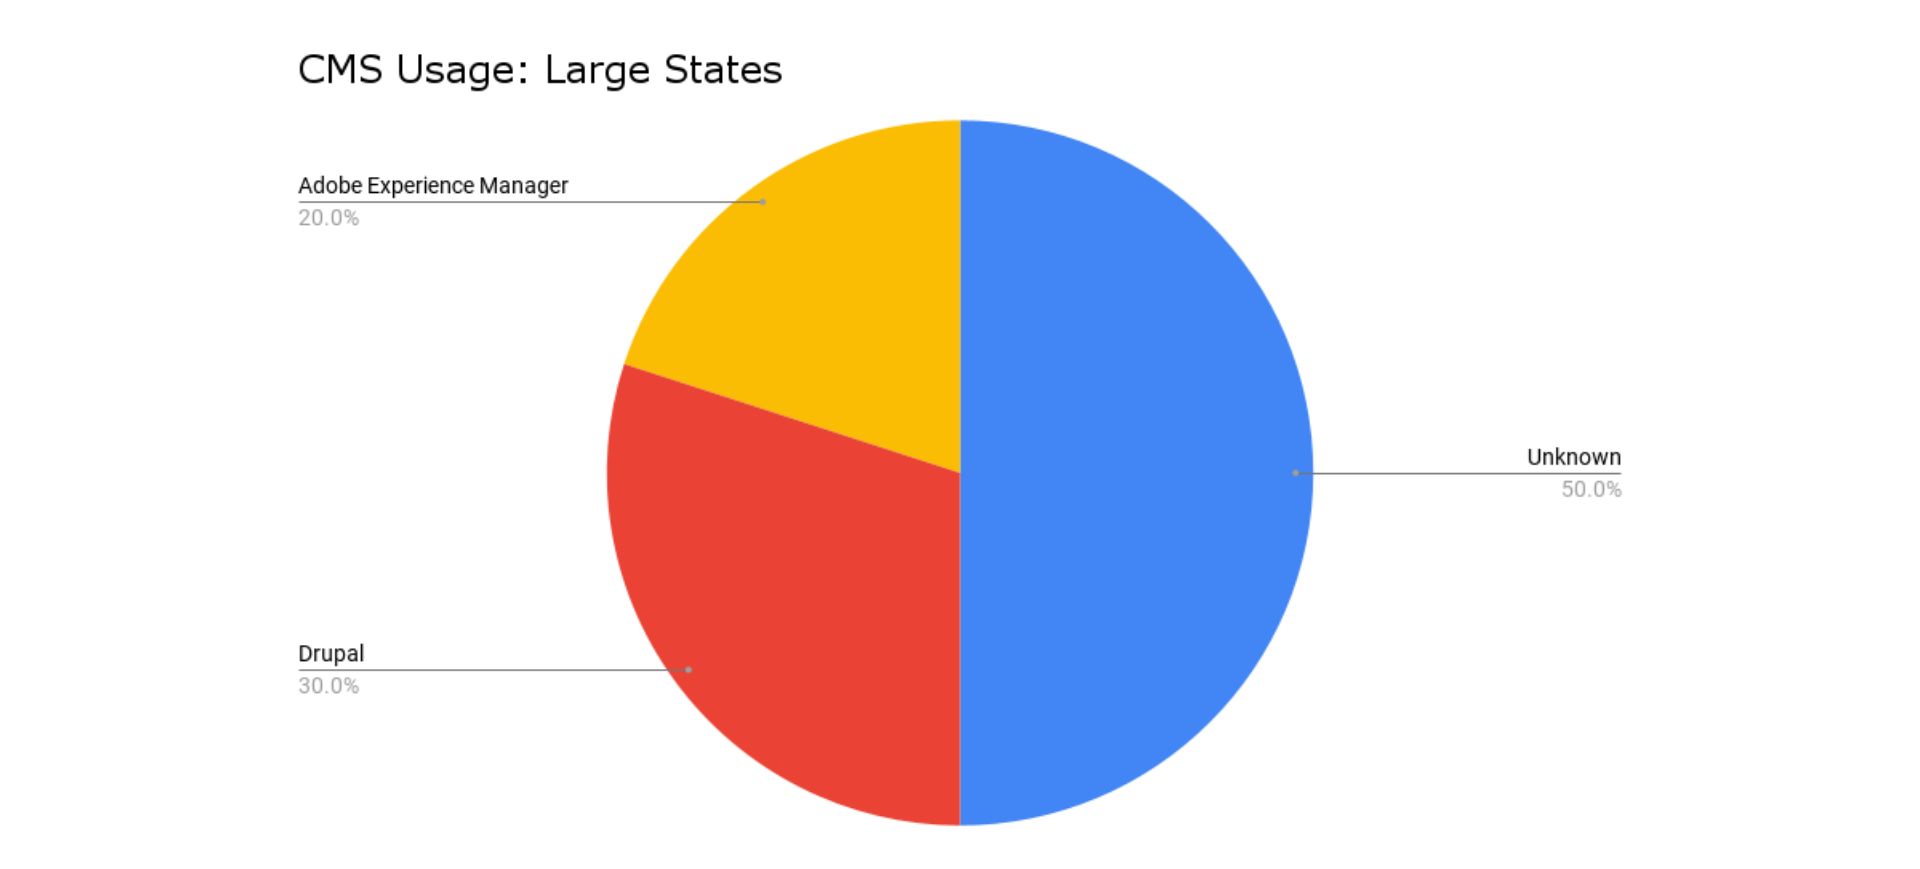 cms usage: large states